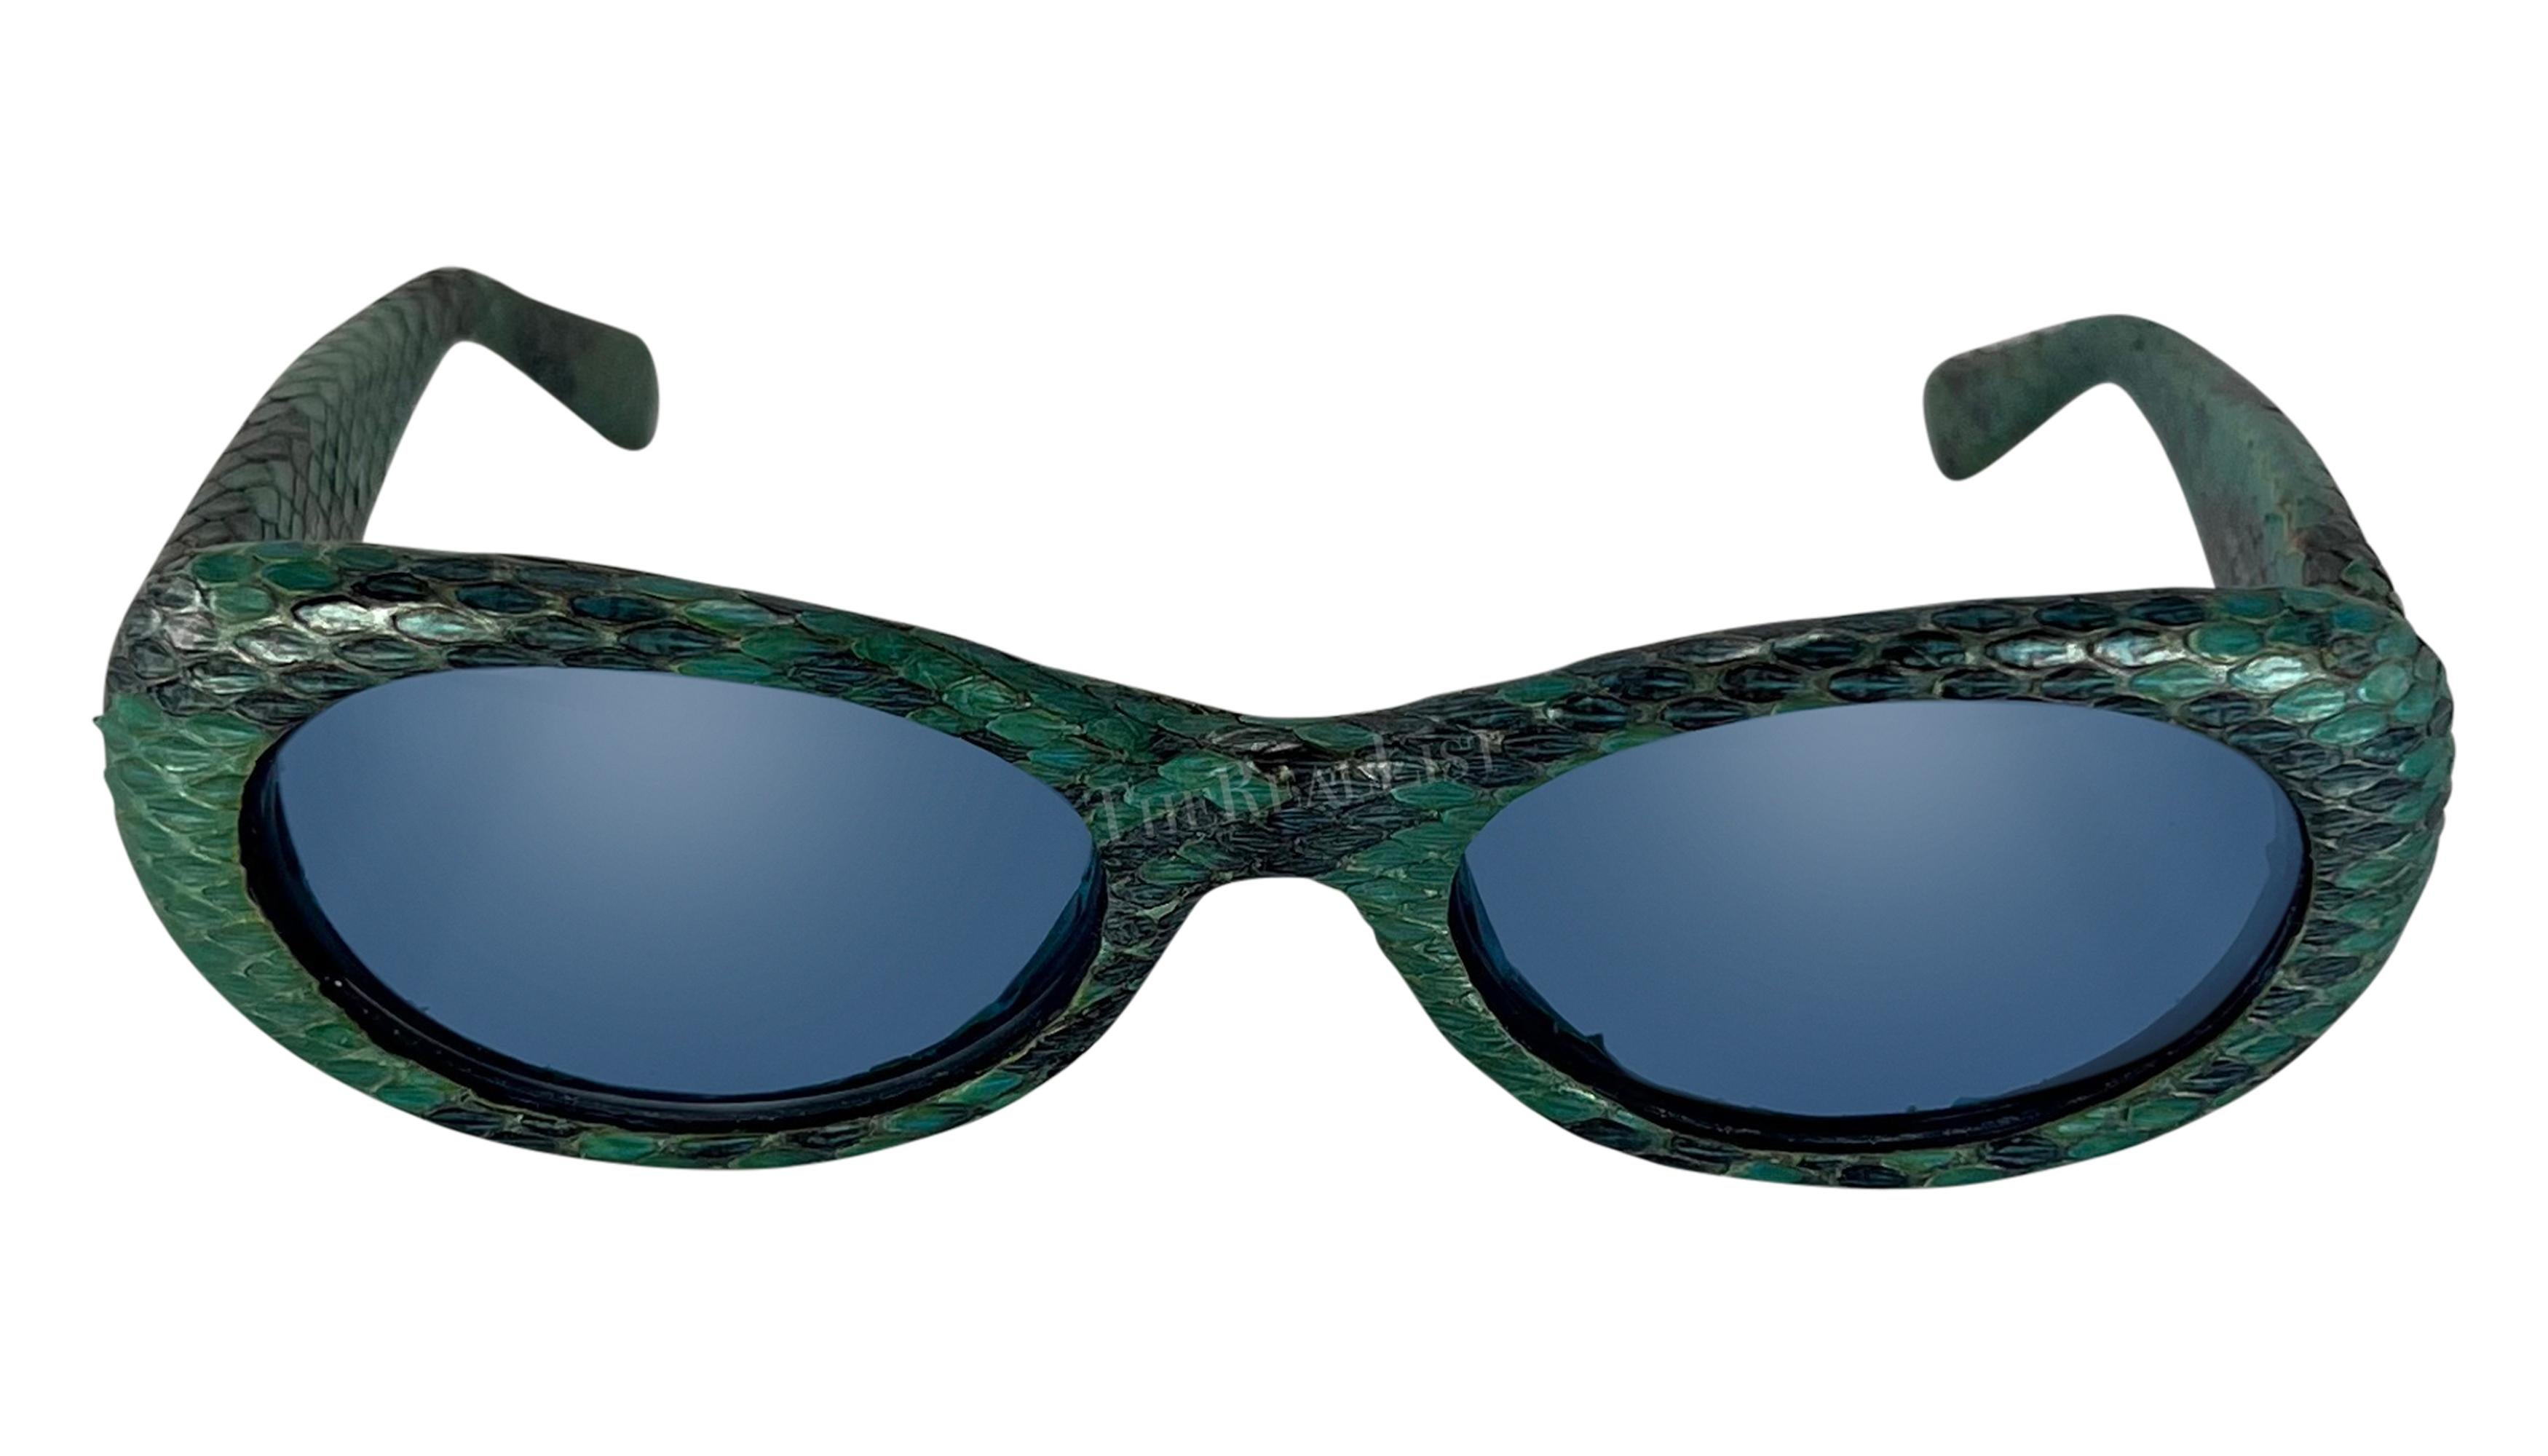 Issues de la collection printemps/été 2000, ces lunettes de soleil ovales Gianni Versace en python bleu, dessinées par Donatella Versace, sont recouvertes de peau de python bleu. Les lunettes sont dotées de verres bleu clair et sont complétées par